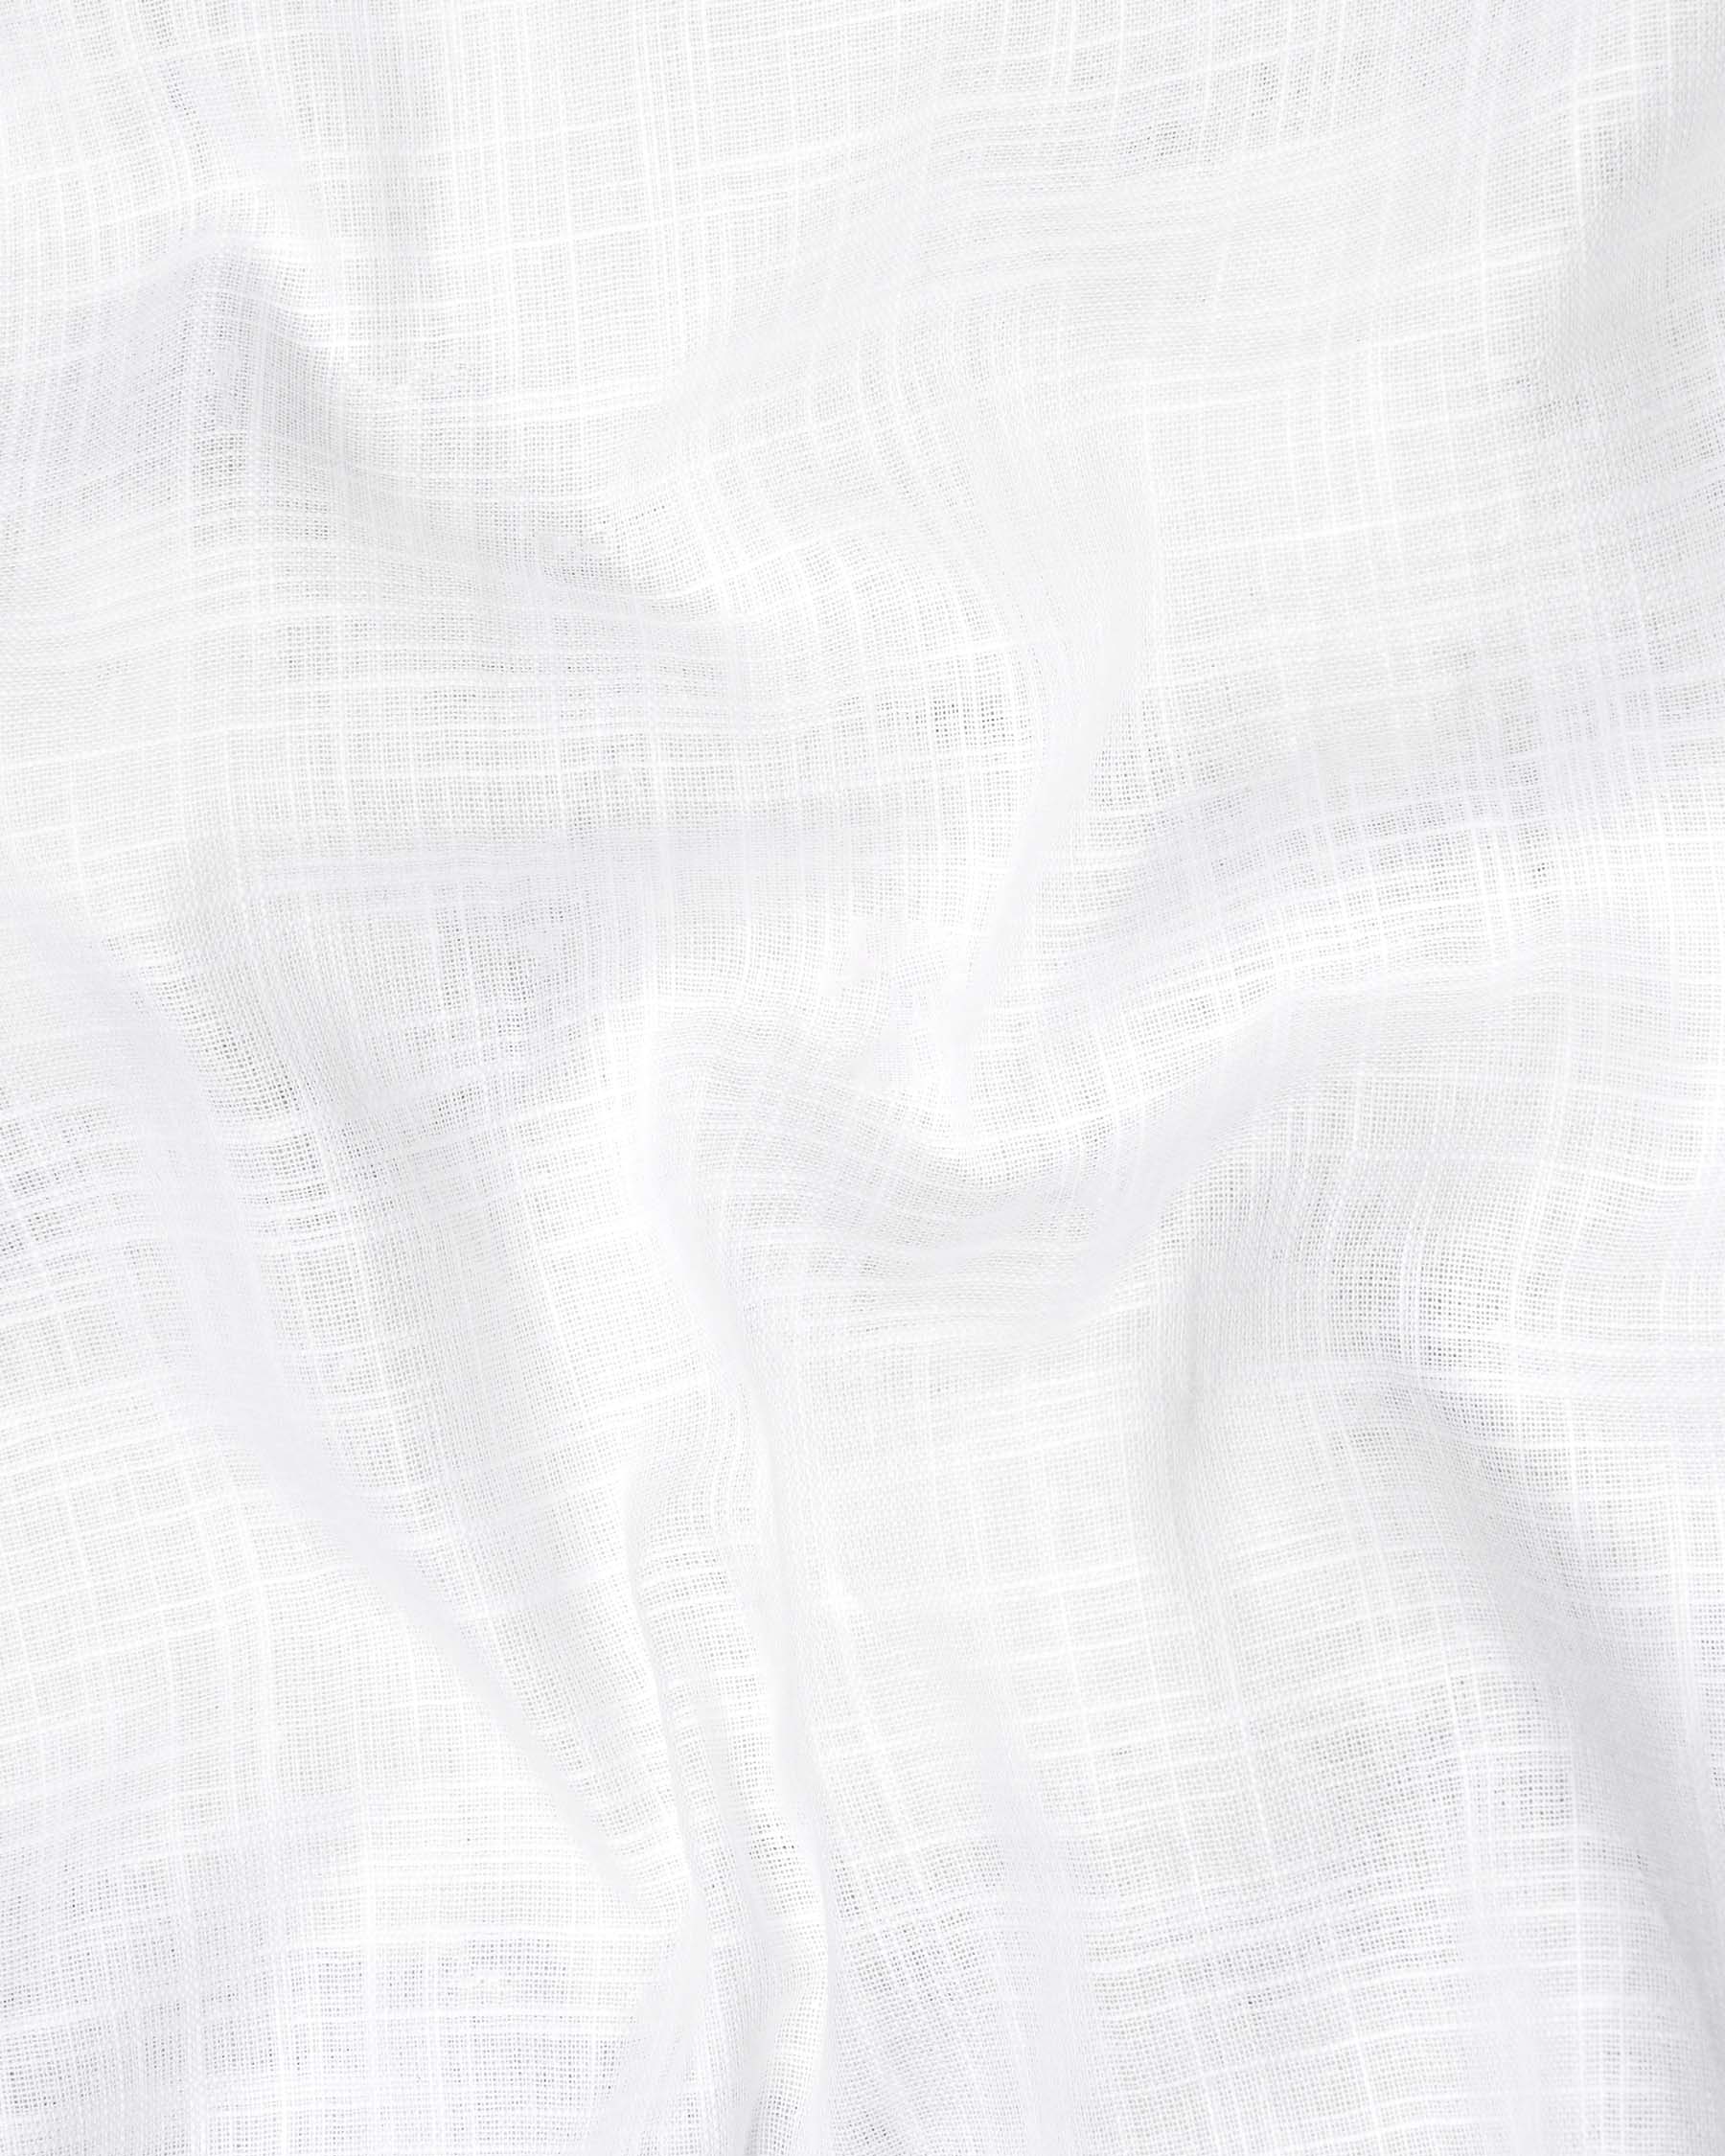 Bright White Royal Oxford Shirt 6210-M-38, 6210-M-H-38, 6210-M-39, 6210-M-H-39, 6210-M-40, 6210-M-H-40, 6210-M-42, 6210-M-H-42, 6210-M-44, 6210-M-H-44, 6210-M-46, 6210-M-H-46, 6210-M-48, 6210-M-H-48, 6210-M-50, 6210-M-H-50, 6210-M-52, 6210-M-H-52